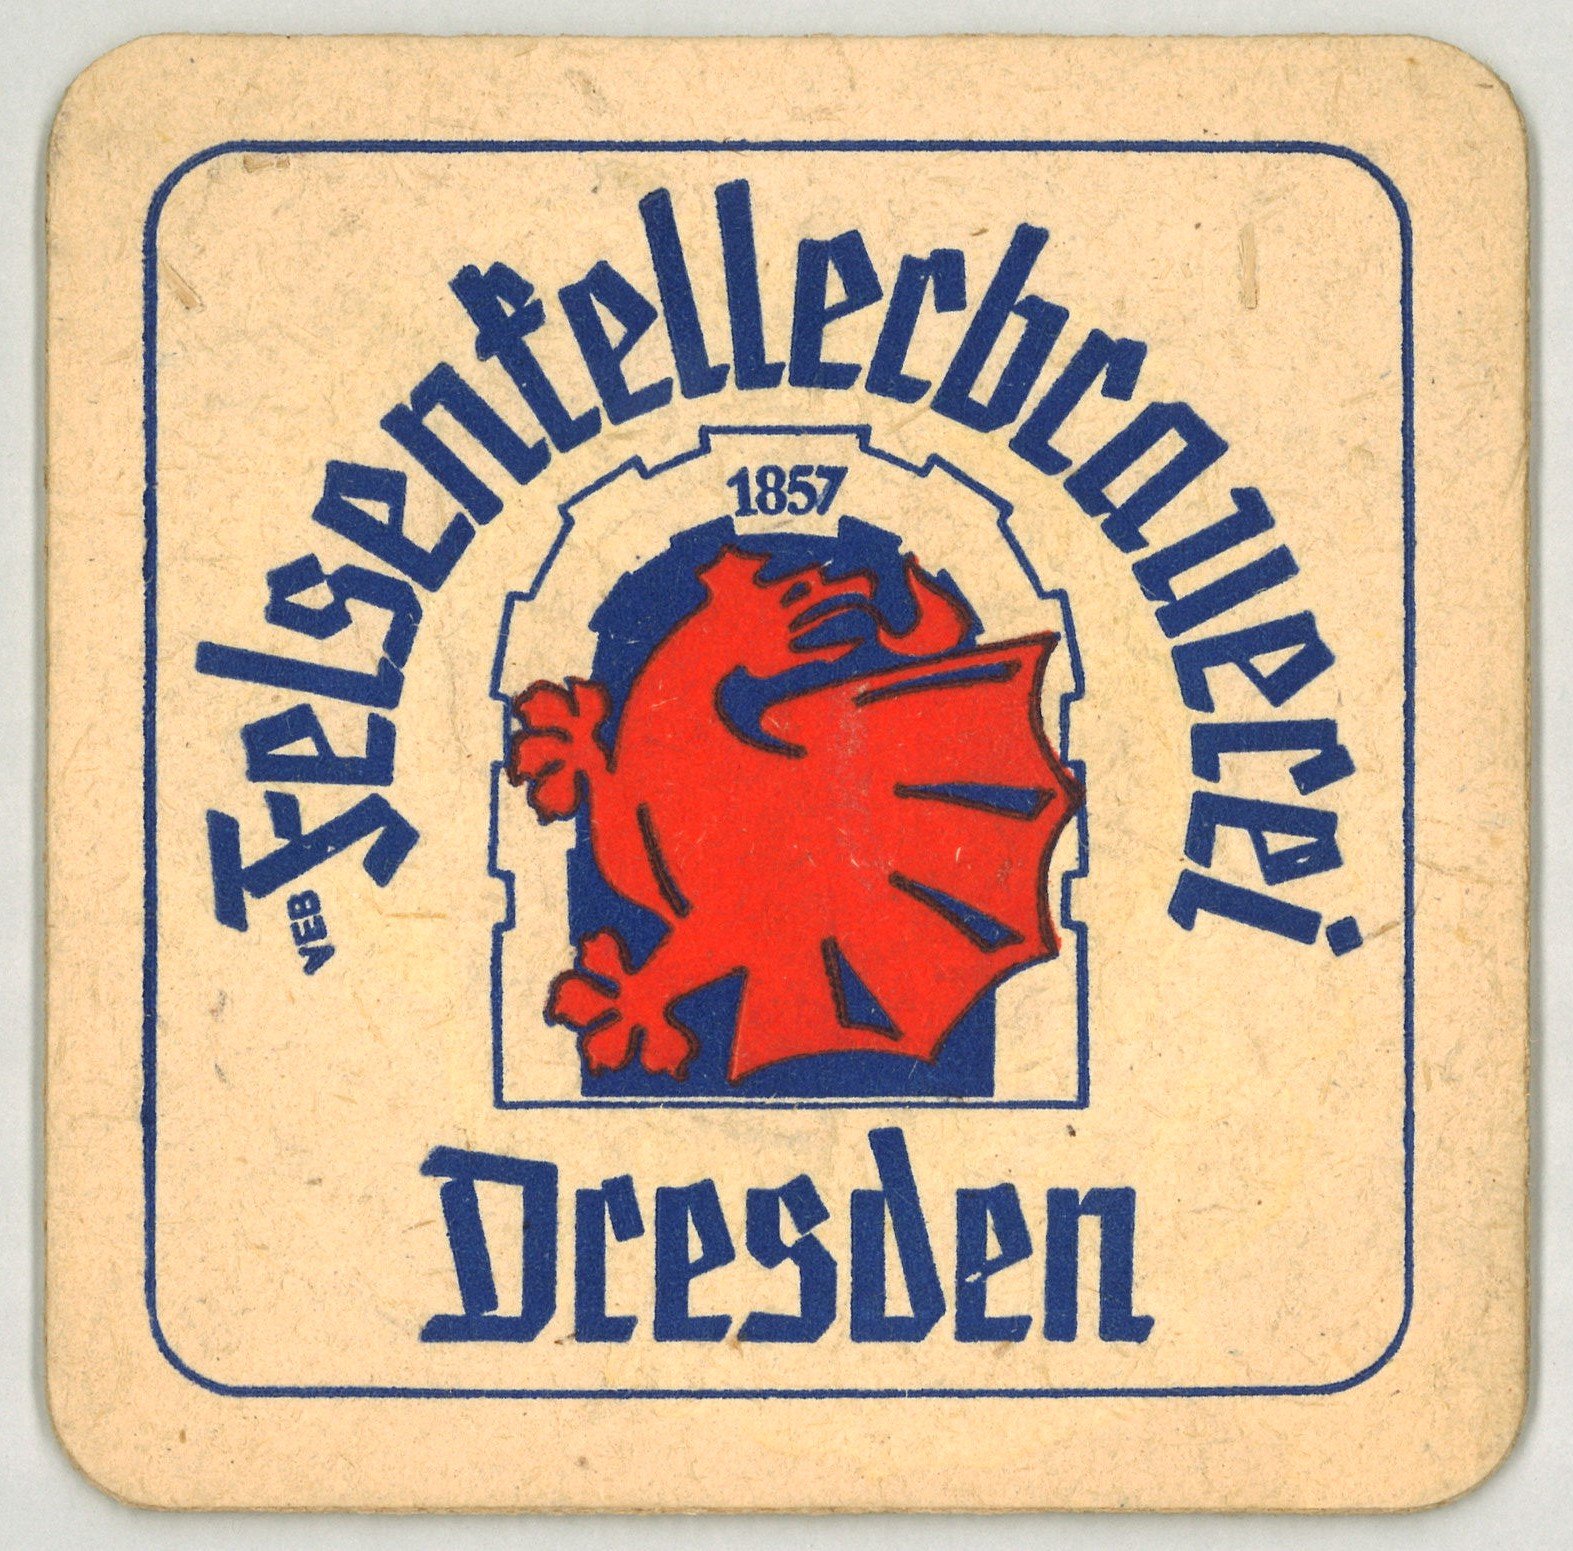 Dresden: VEB Felsenkellerbrauerei Dresden (Landesgeschichtliche Vereinigung für die Mark Brandenburg e.V., Archiv CC BY)